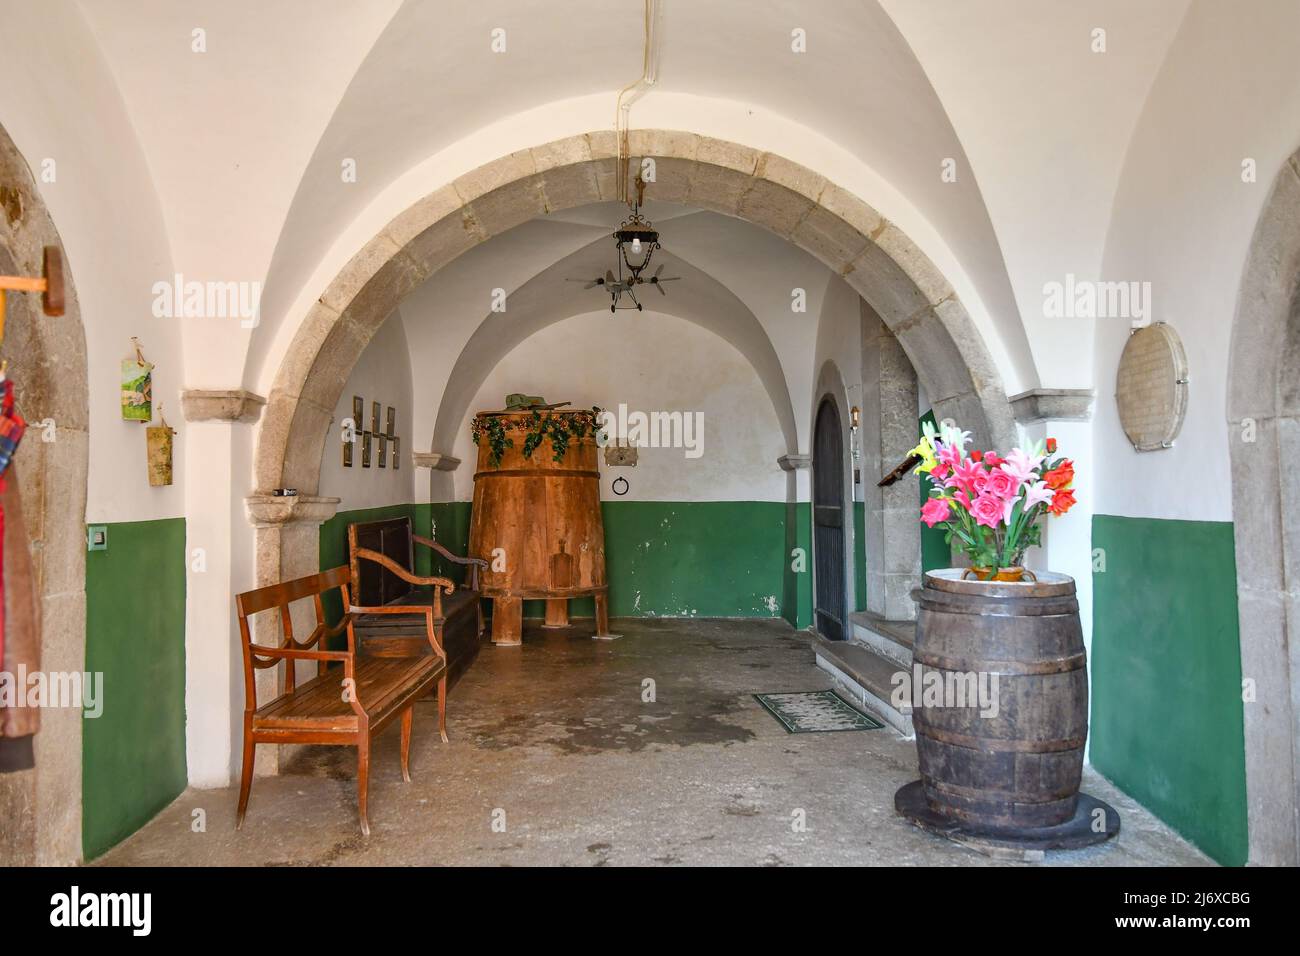 Entrée d'une ancienne maison à Morcone, village de la province de Benevento, Italie. Banque D'Images